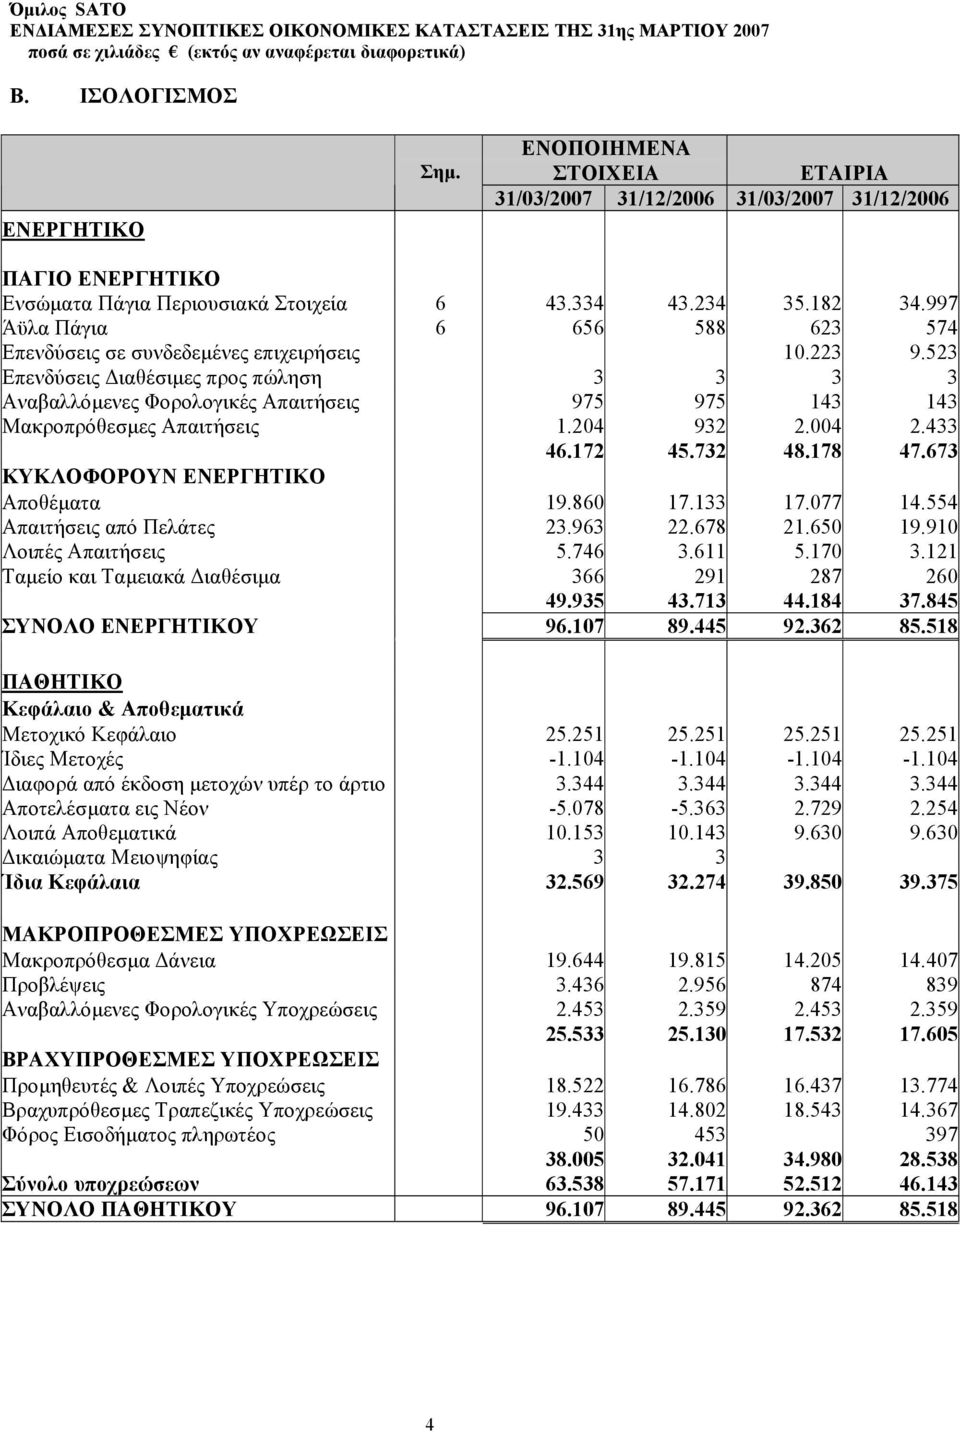 997 Άϋλα Πάγια 6 656 588 623 574 Επενδύσεις σε συνδεδεµένες επιχειρήσεις 10.223 9.